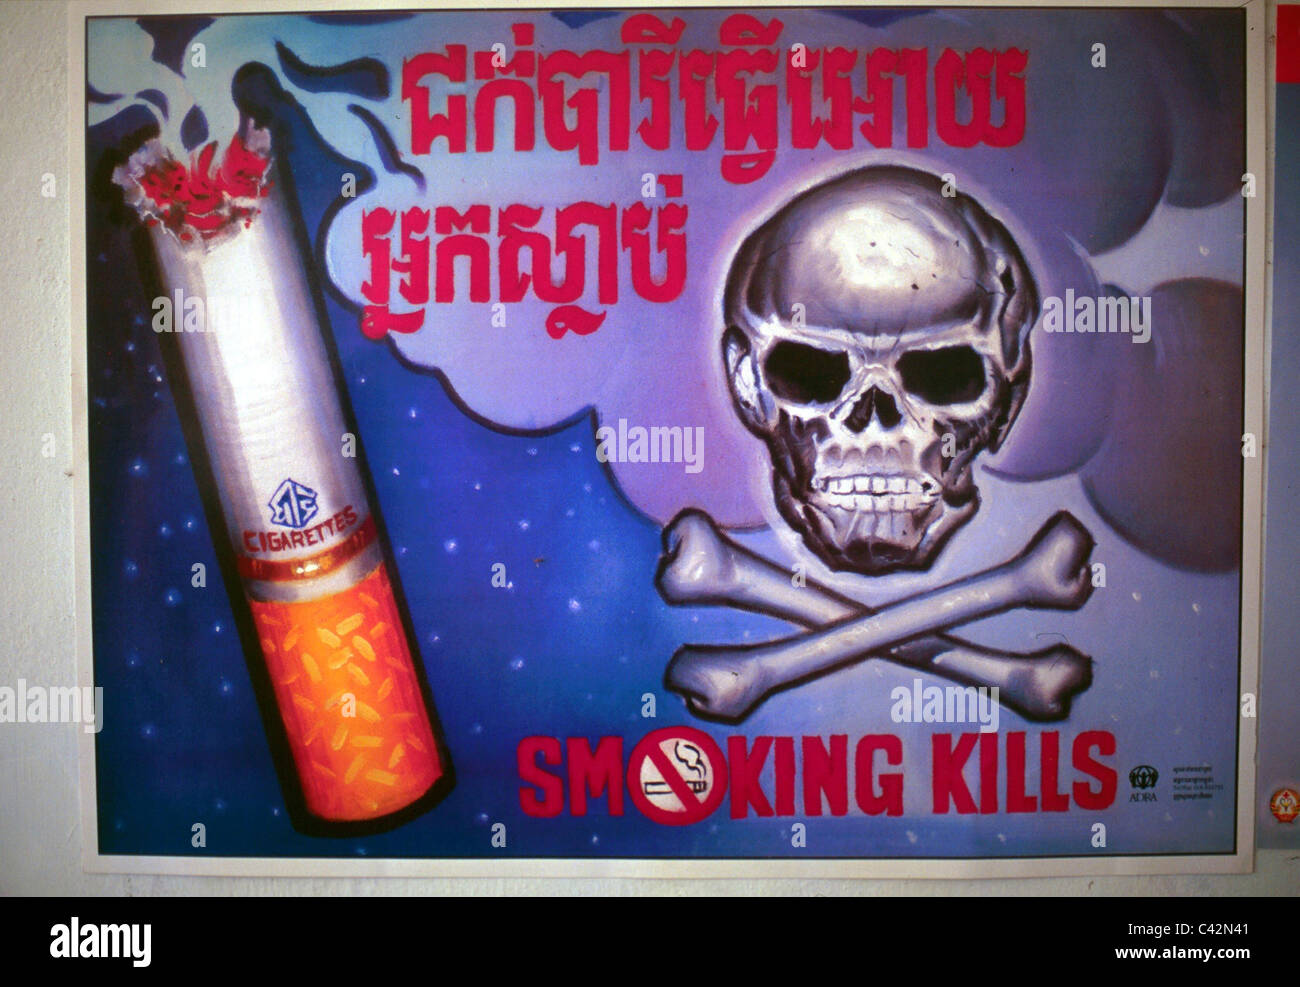 Kambodschanische Anti Rauchen Gesundheit Bildung Plakat Kambodscha Stockfotografie Alamy